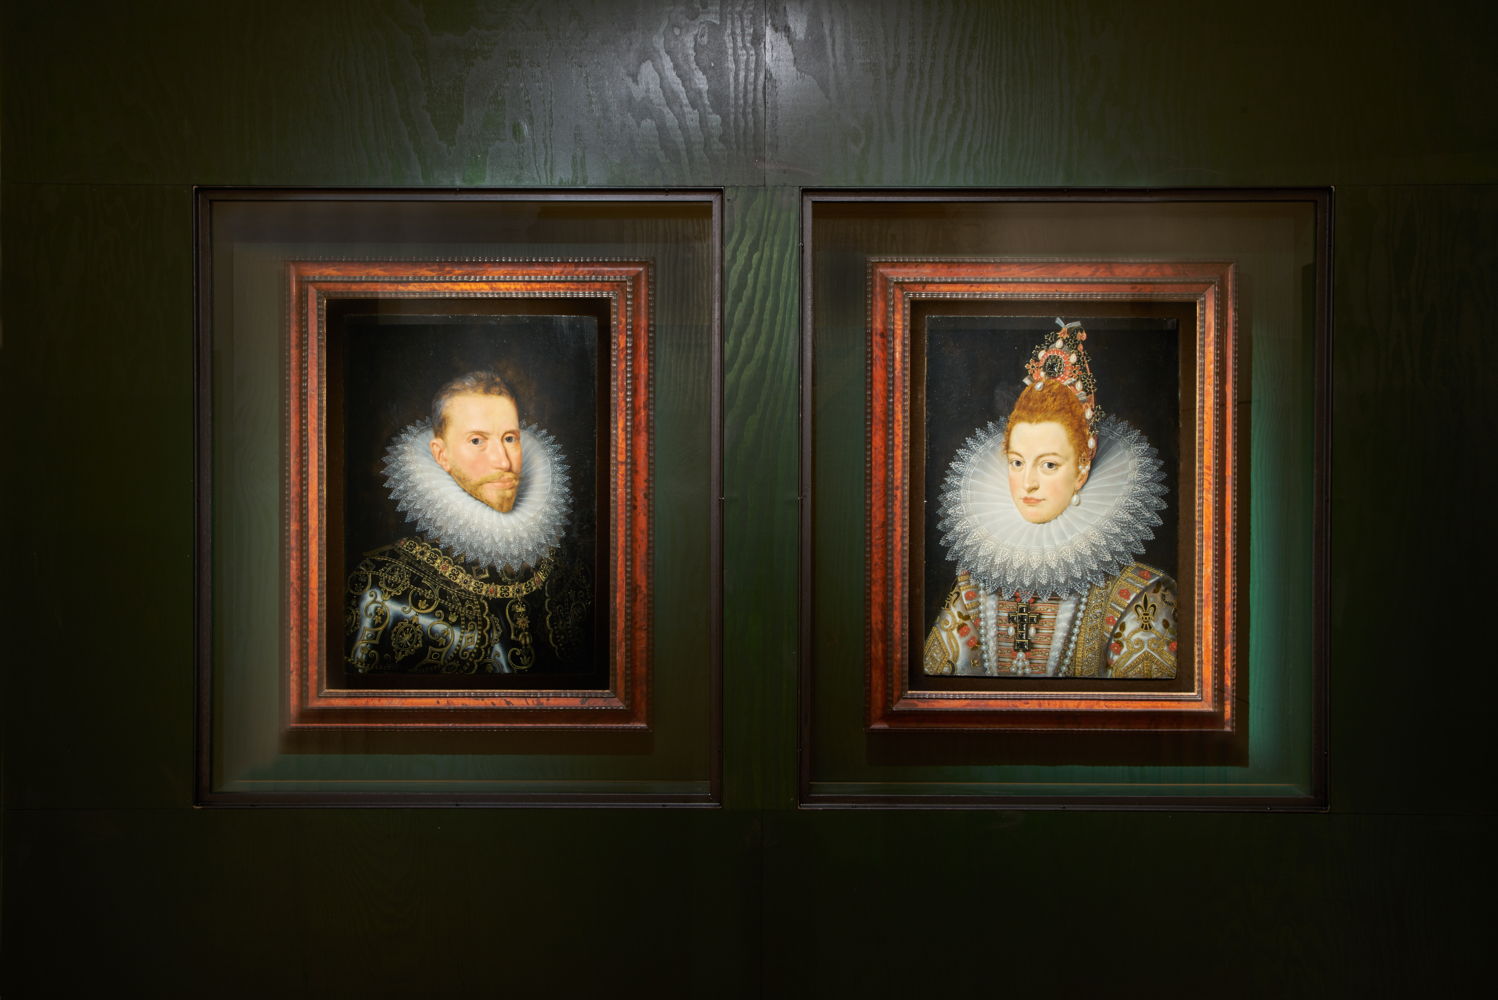 Frans Pourbus II, Portretten van de aartshertogen Albrecht en Isabella, Musea Brugge 
(c) Dirk Pauwels